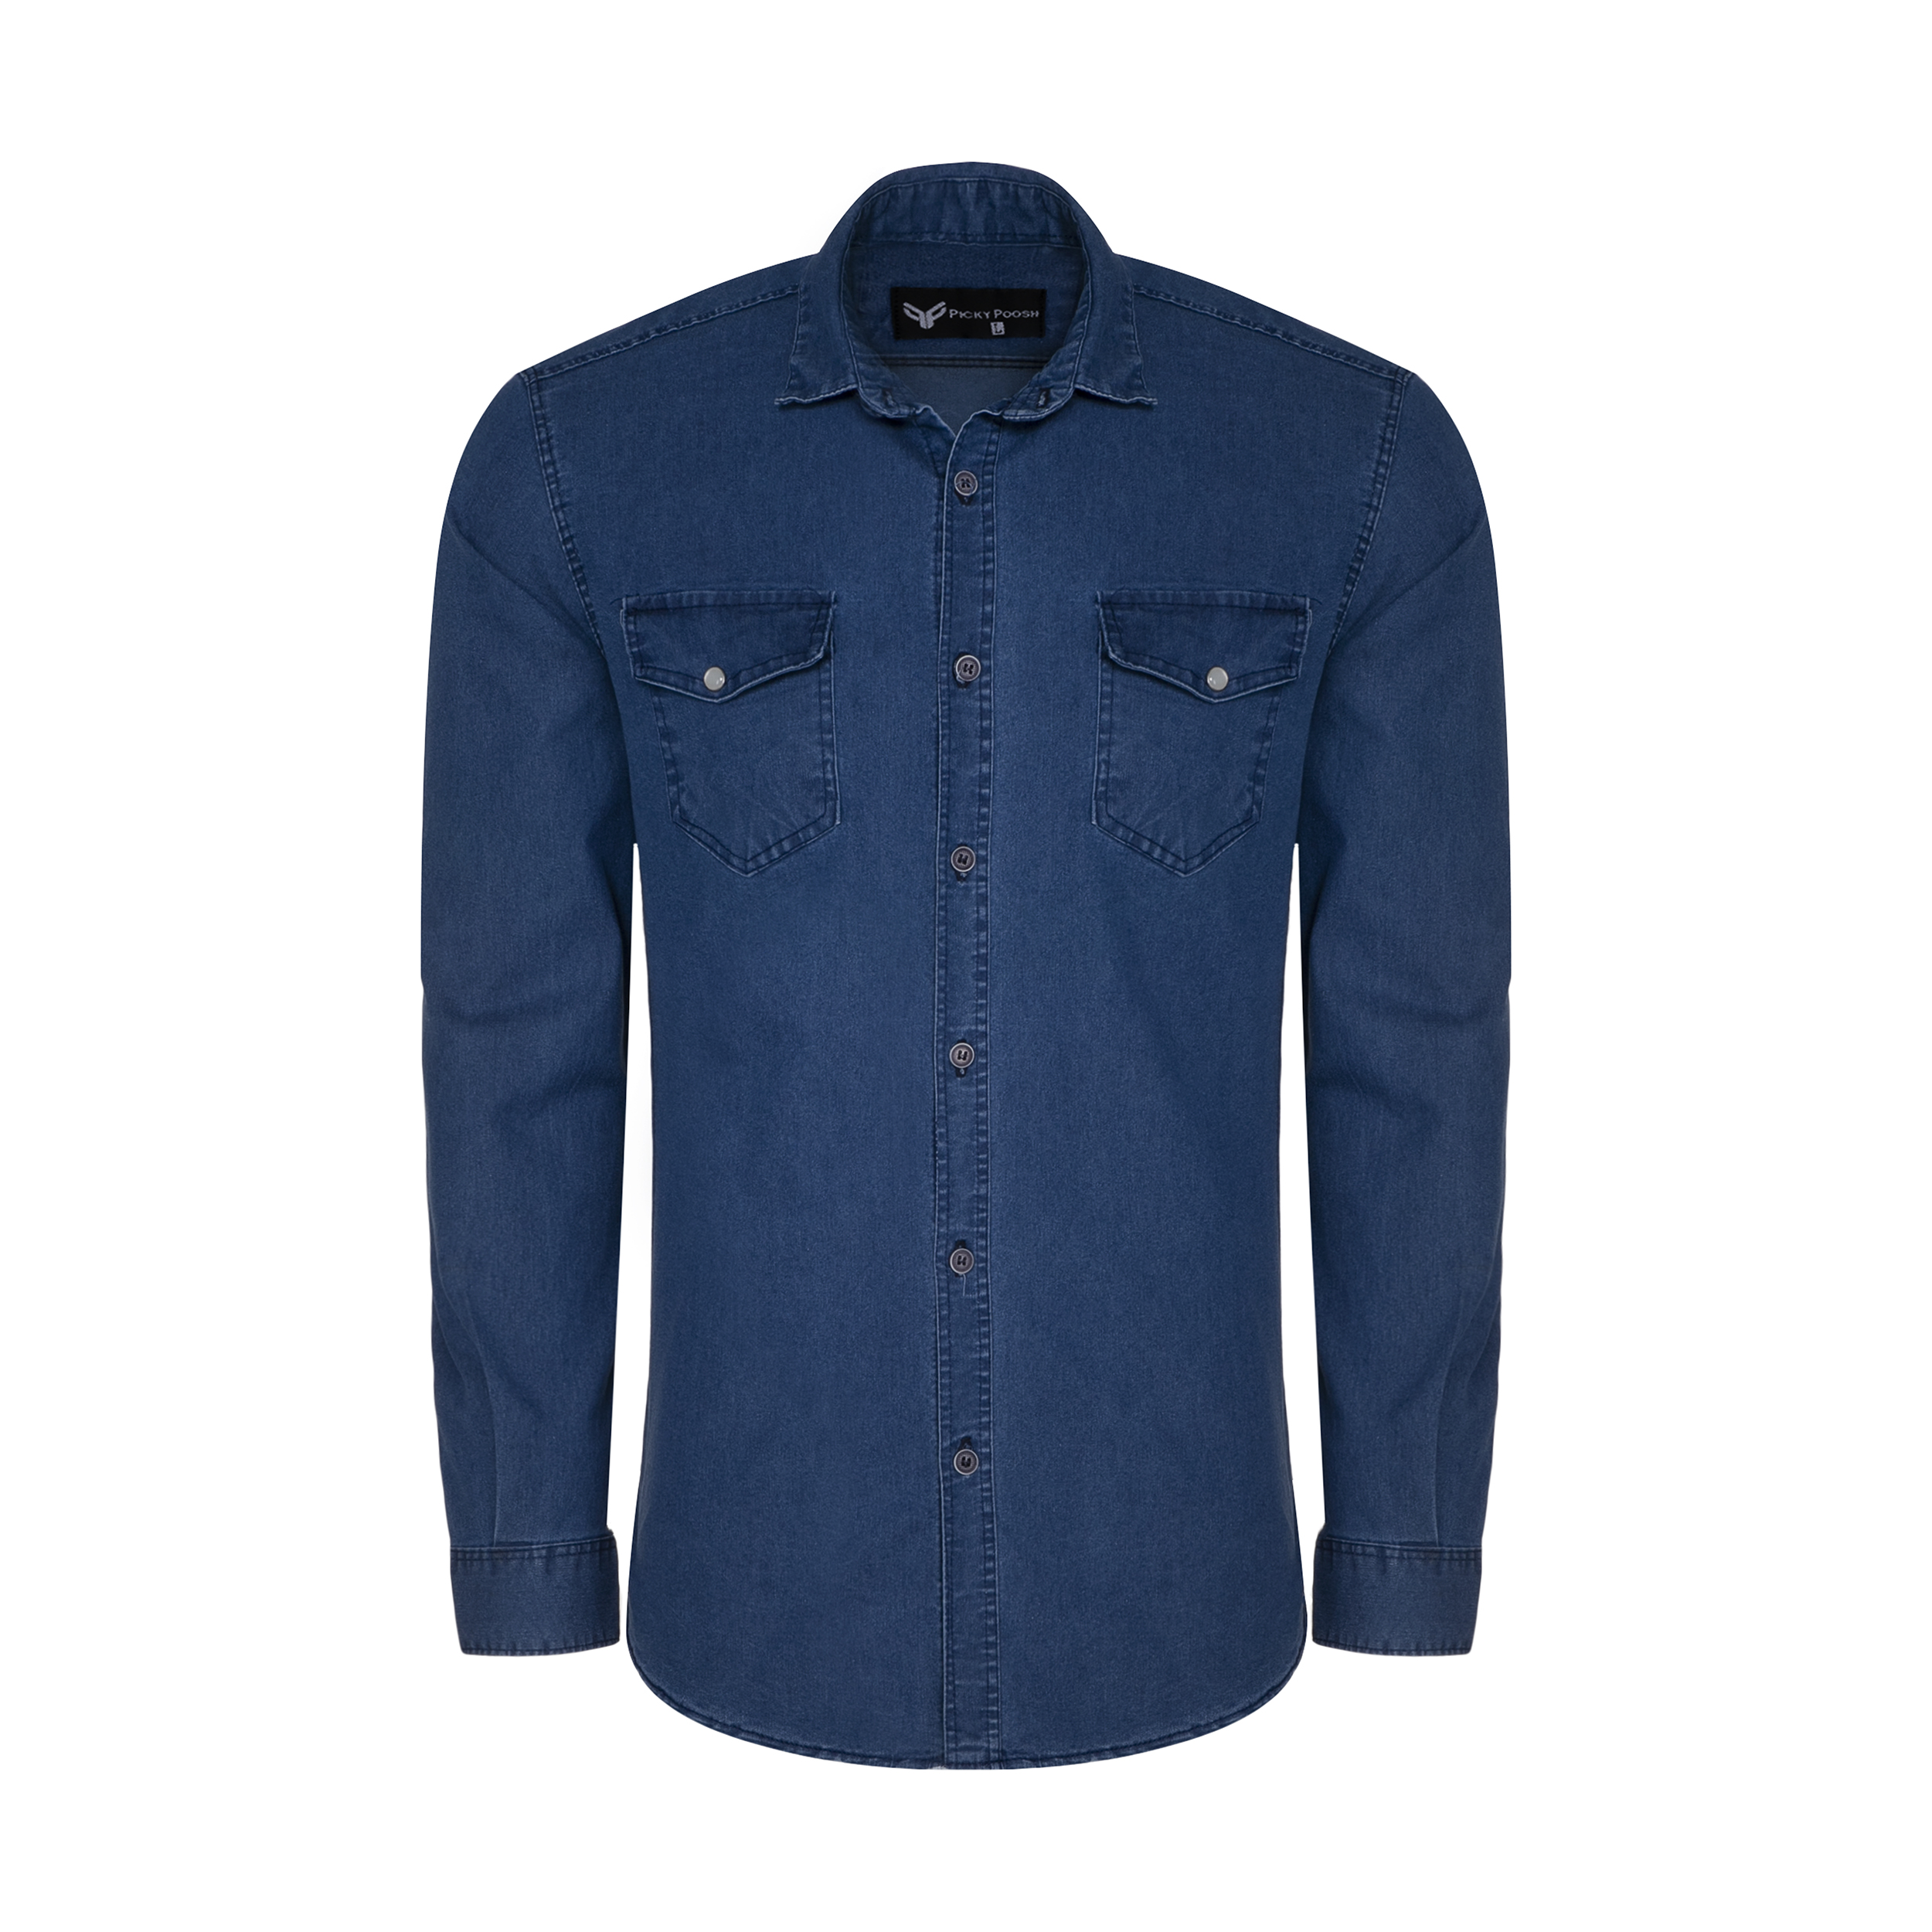 نکته خرید - قیمت روز پیراهن آستین بلند مردانه پیکی پوش مدل M02527 جین خرید